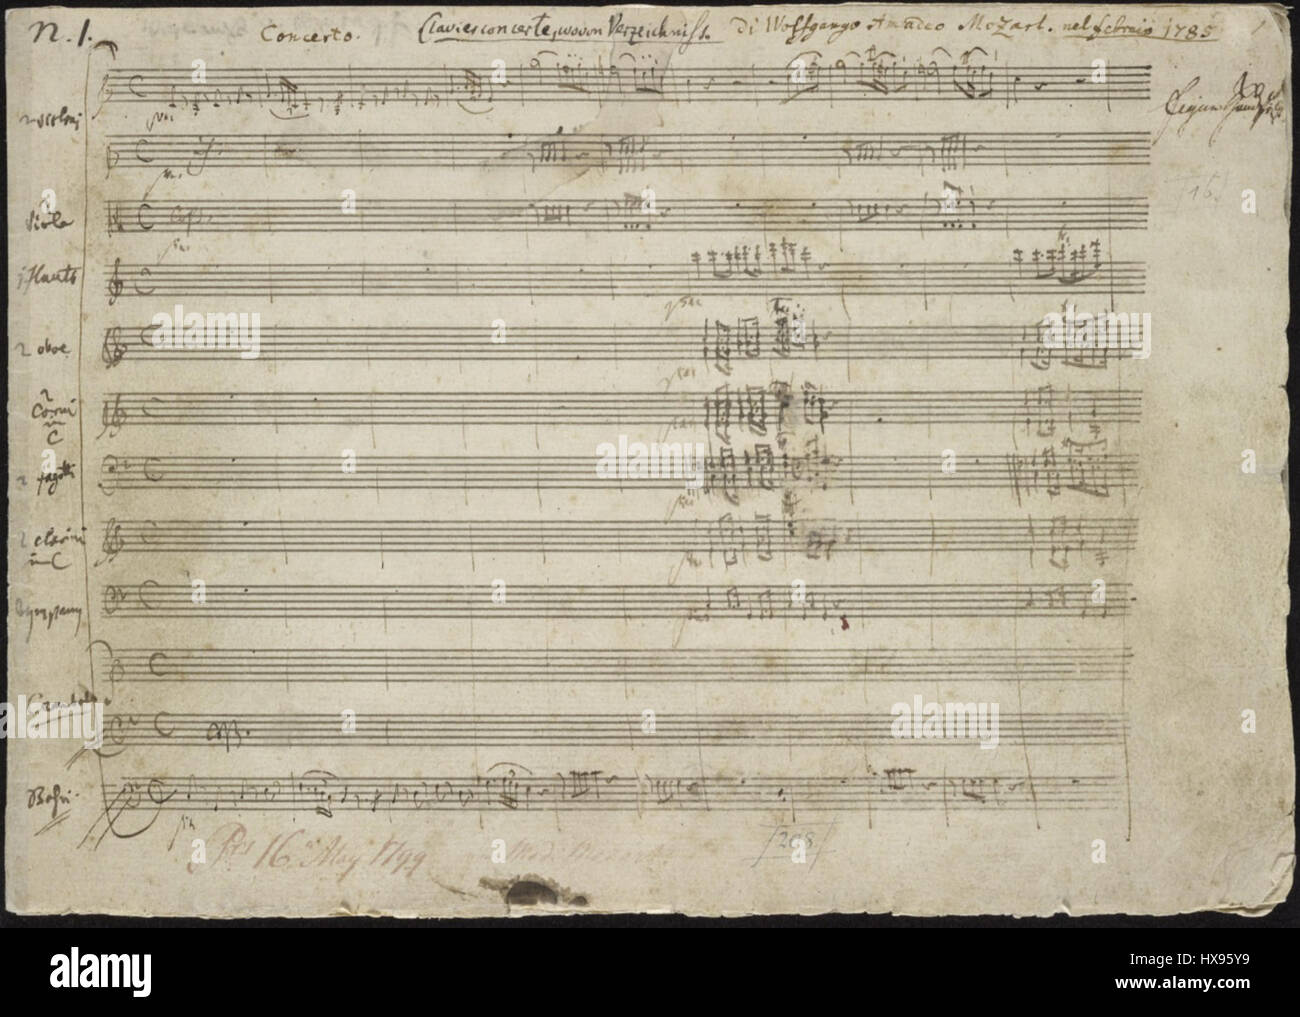 Concierto de piano de Mozart nº 21 página inicial del manuscrito autógrafo  Fotografía de stock - Alamy